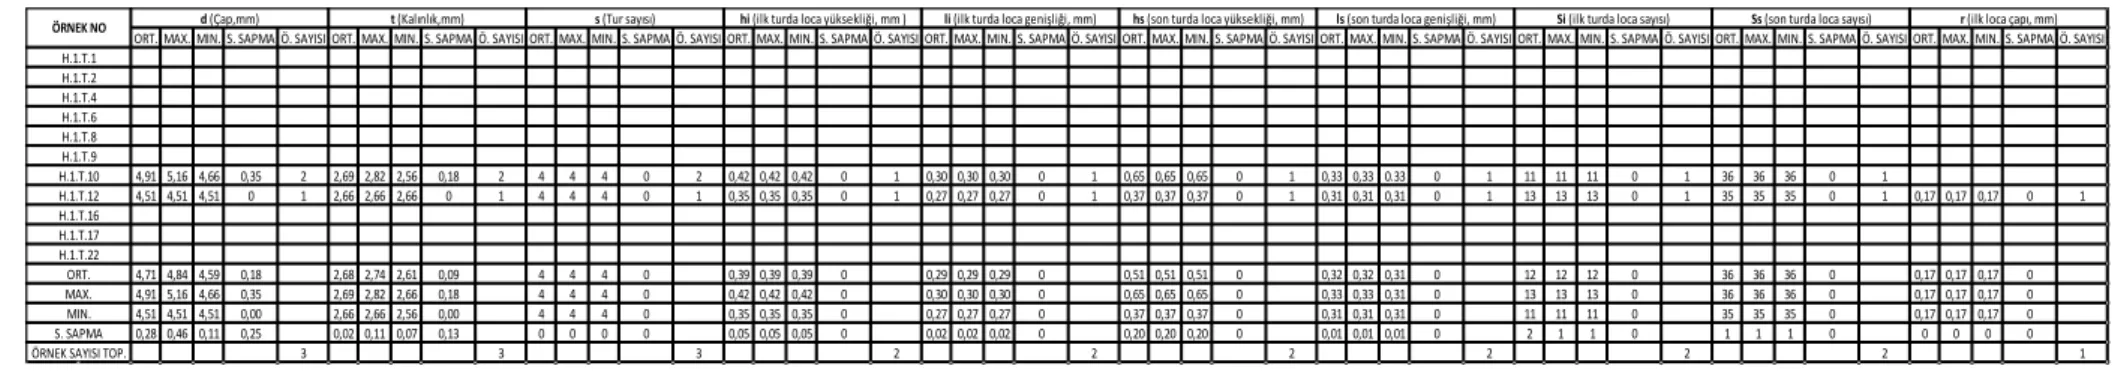 Tablo 4.14. Nummulites atricus (A- formu için) biyometrik parametre  değerleri 